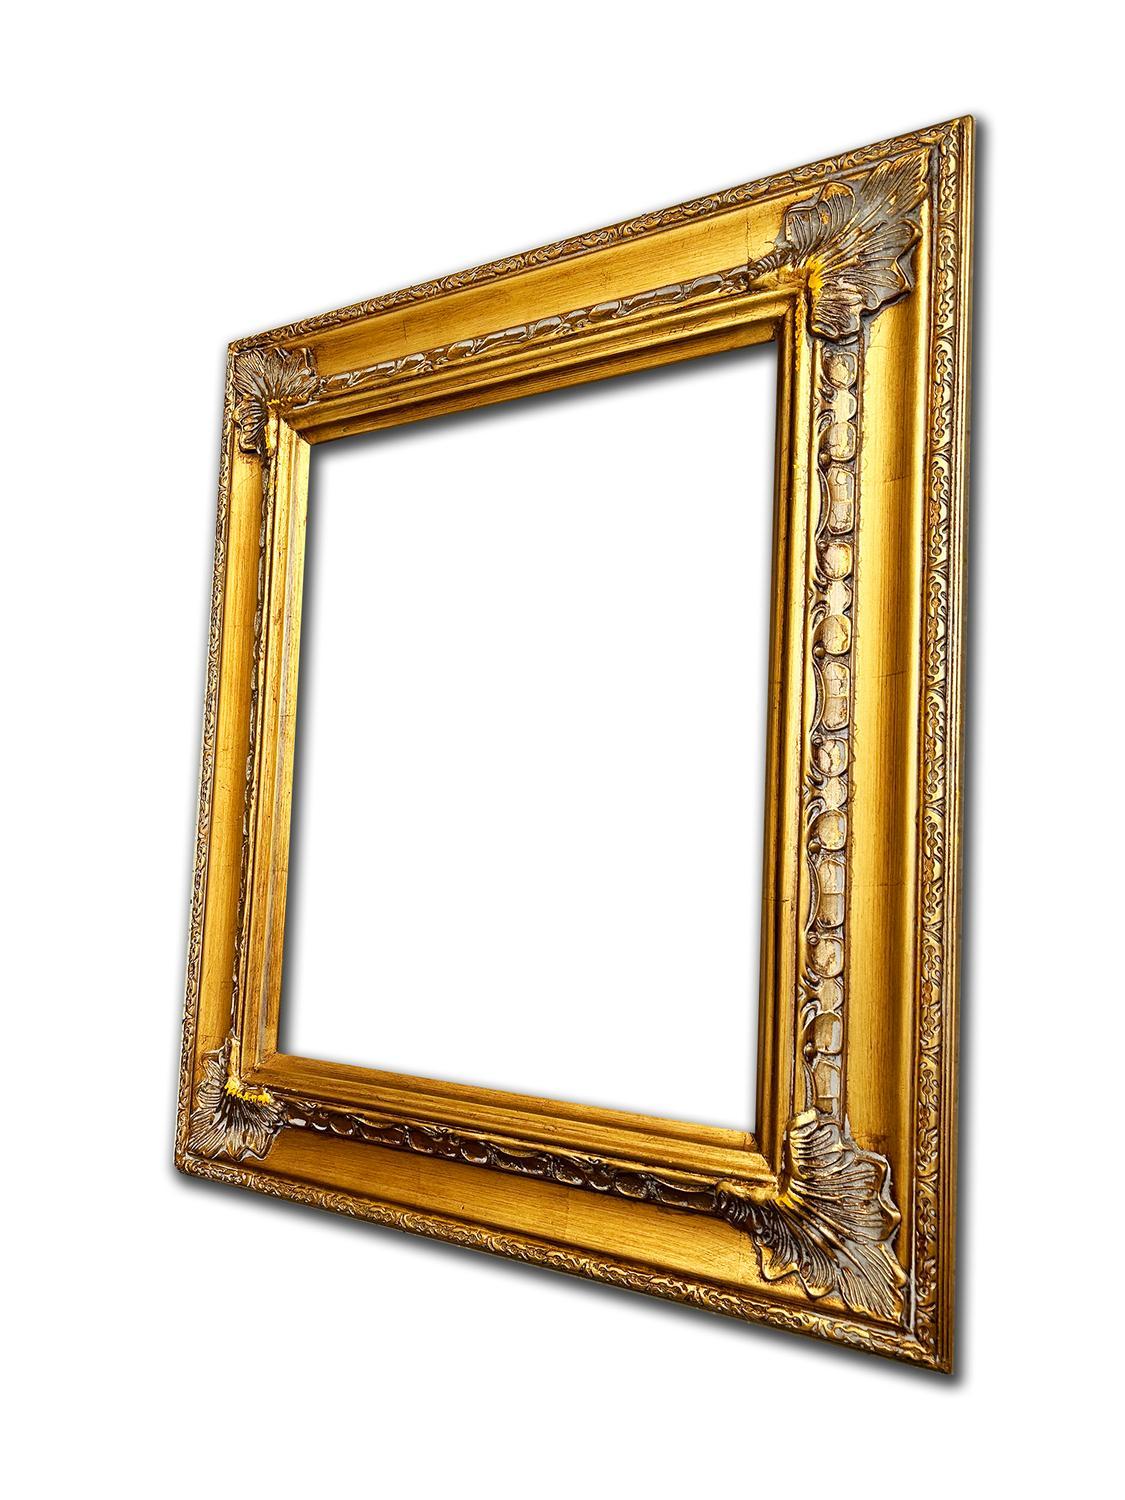 40x50 cm or 16x20 ins, golden frame